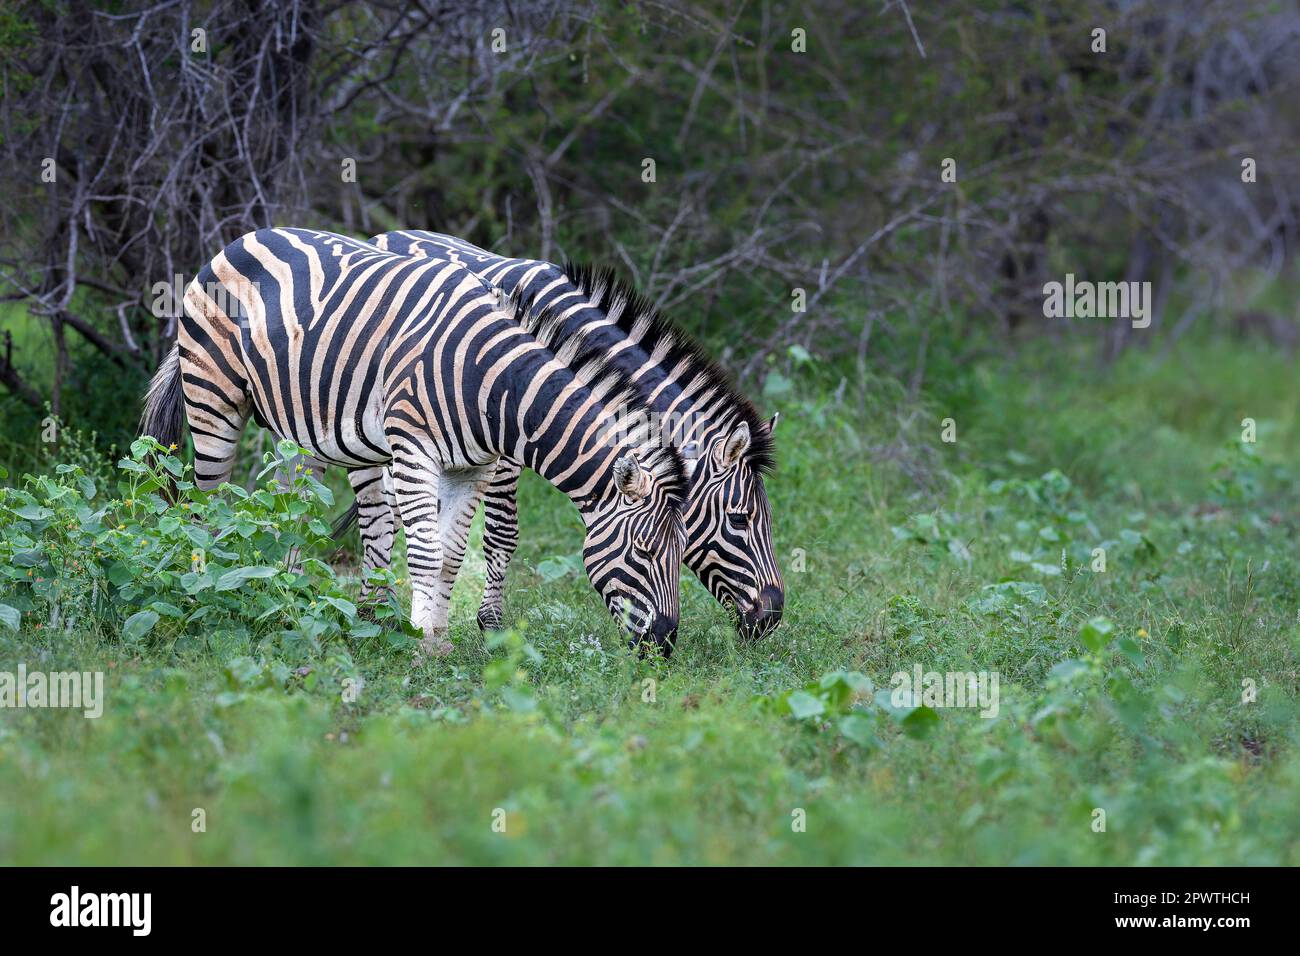 Zwei Zebras grasen nebeneinander, ihre Streifen koordinierten sich, um den Eindruck eines einzelnen Tieres mit zwei Köpfen zu erzeugen. Stockfoto